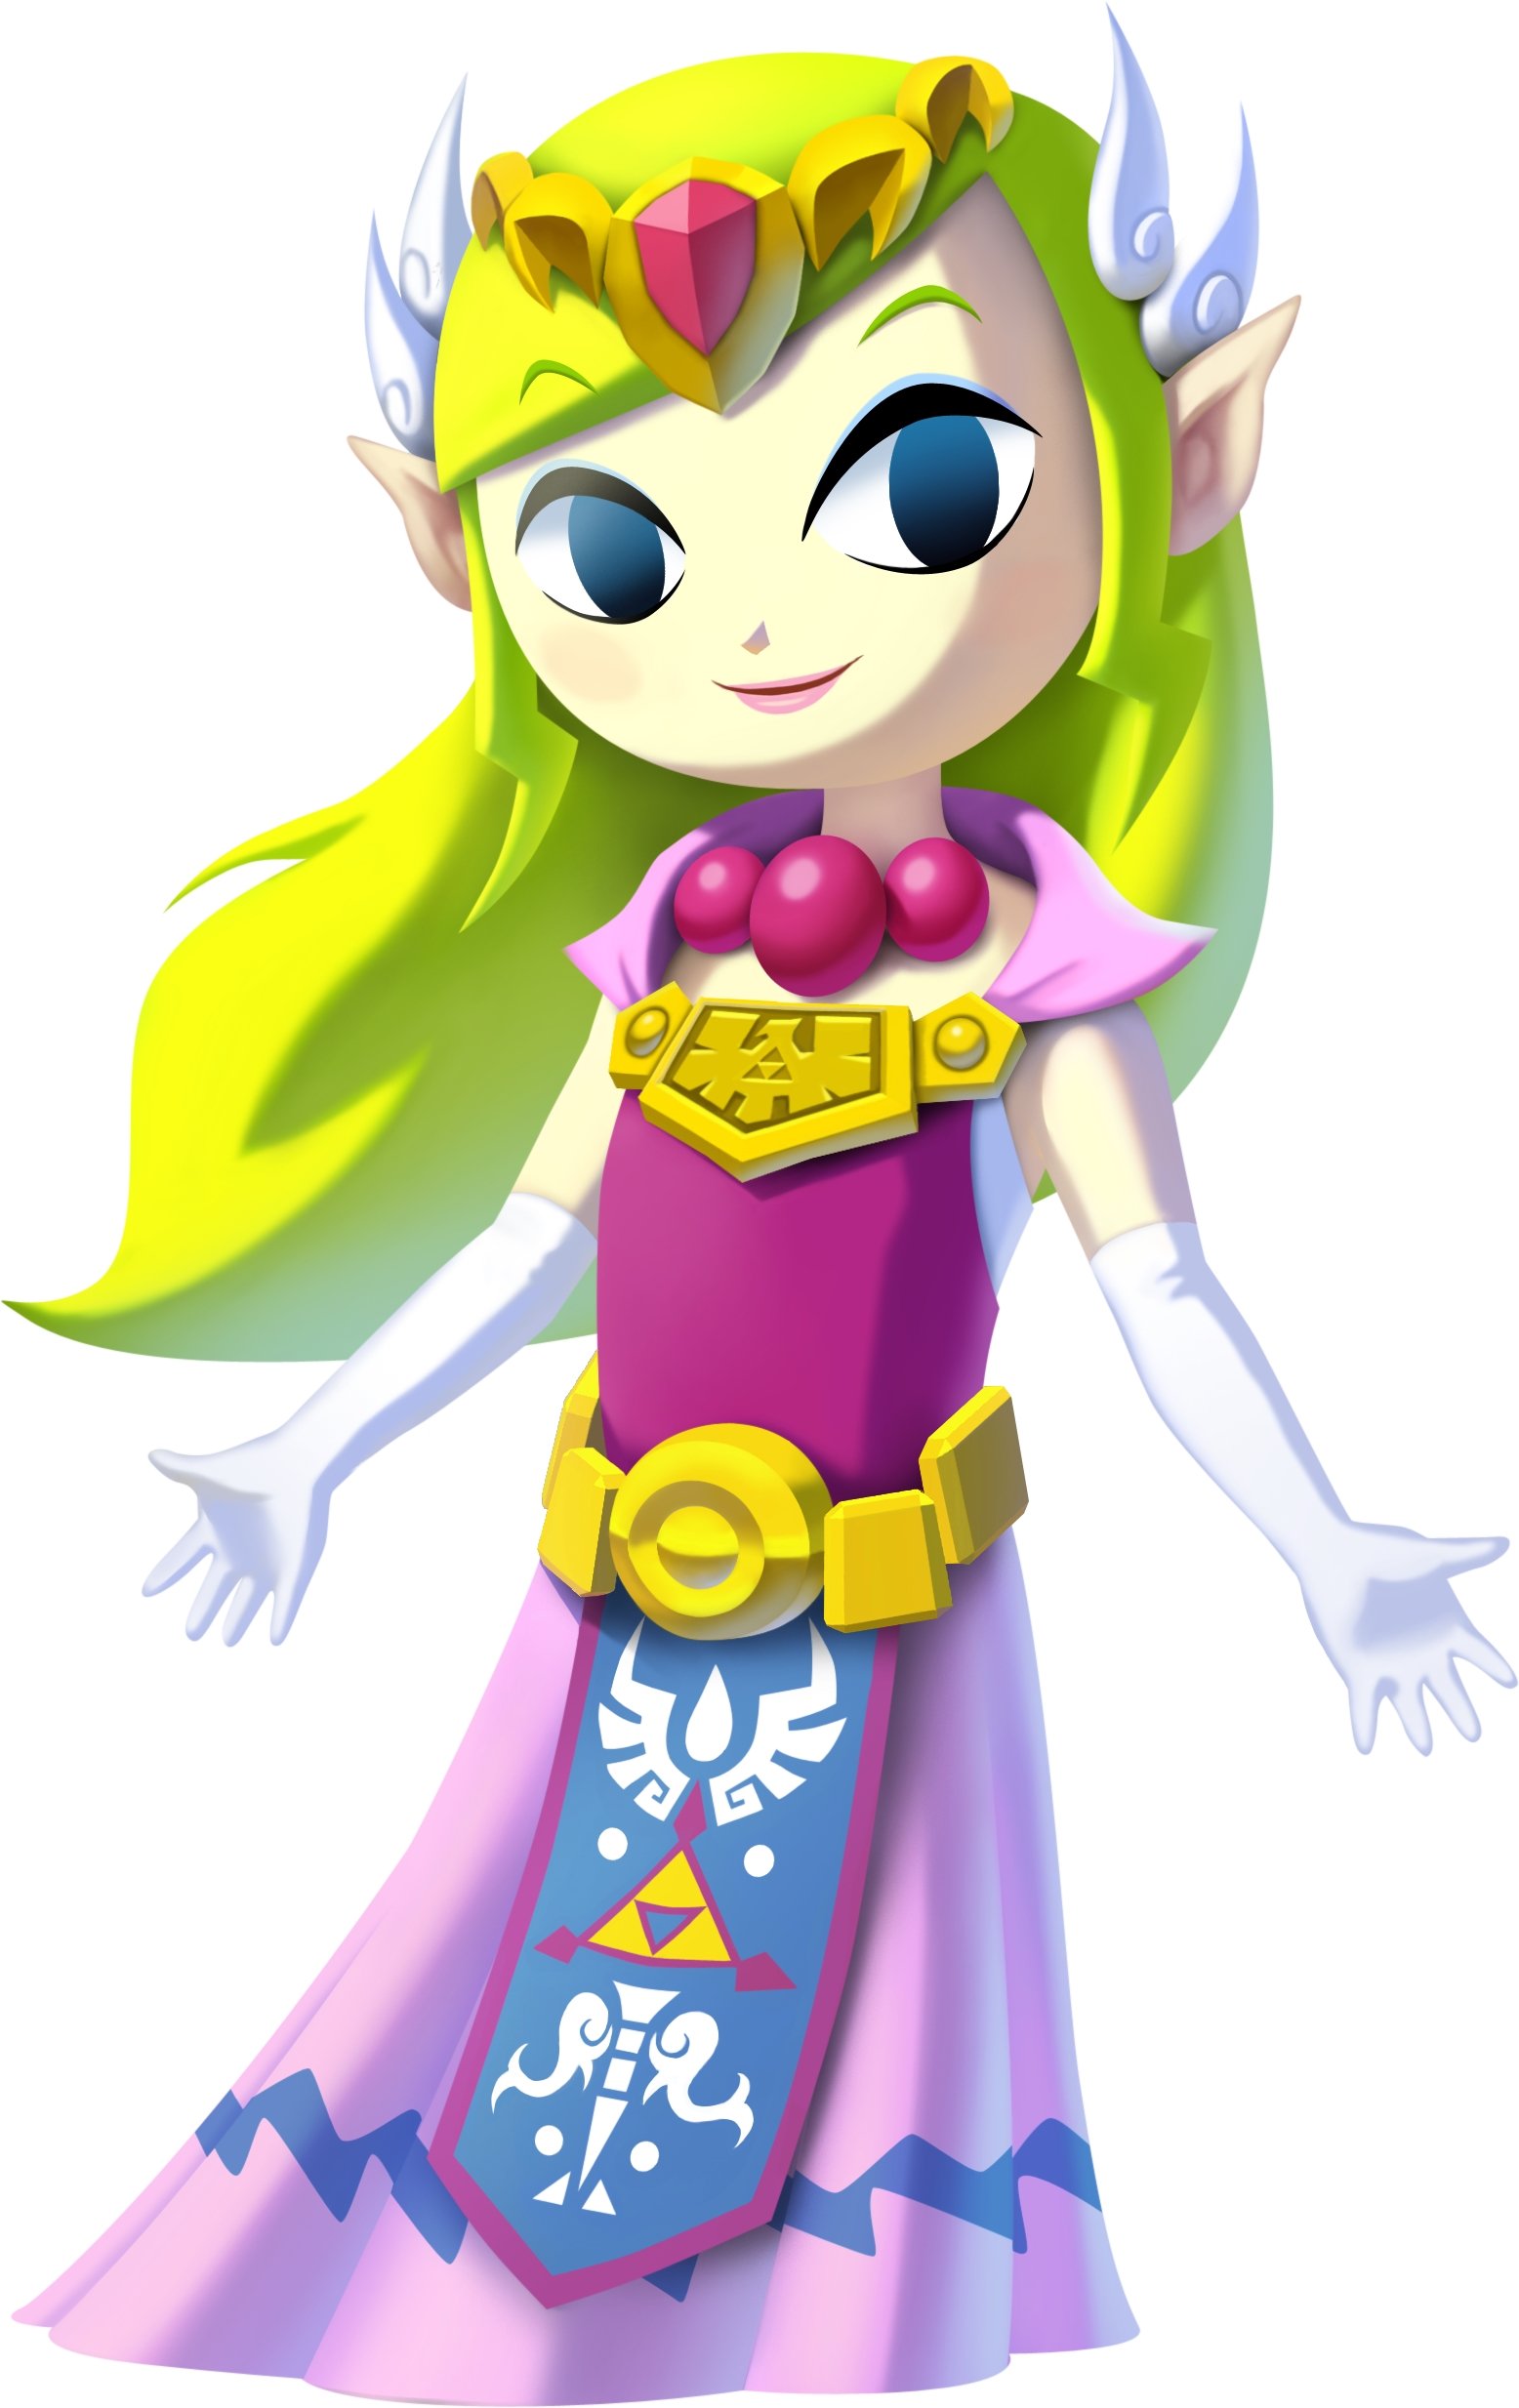 Wind Waker Zelda amiiboo The Legend of Zelda Series (Nintendo